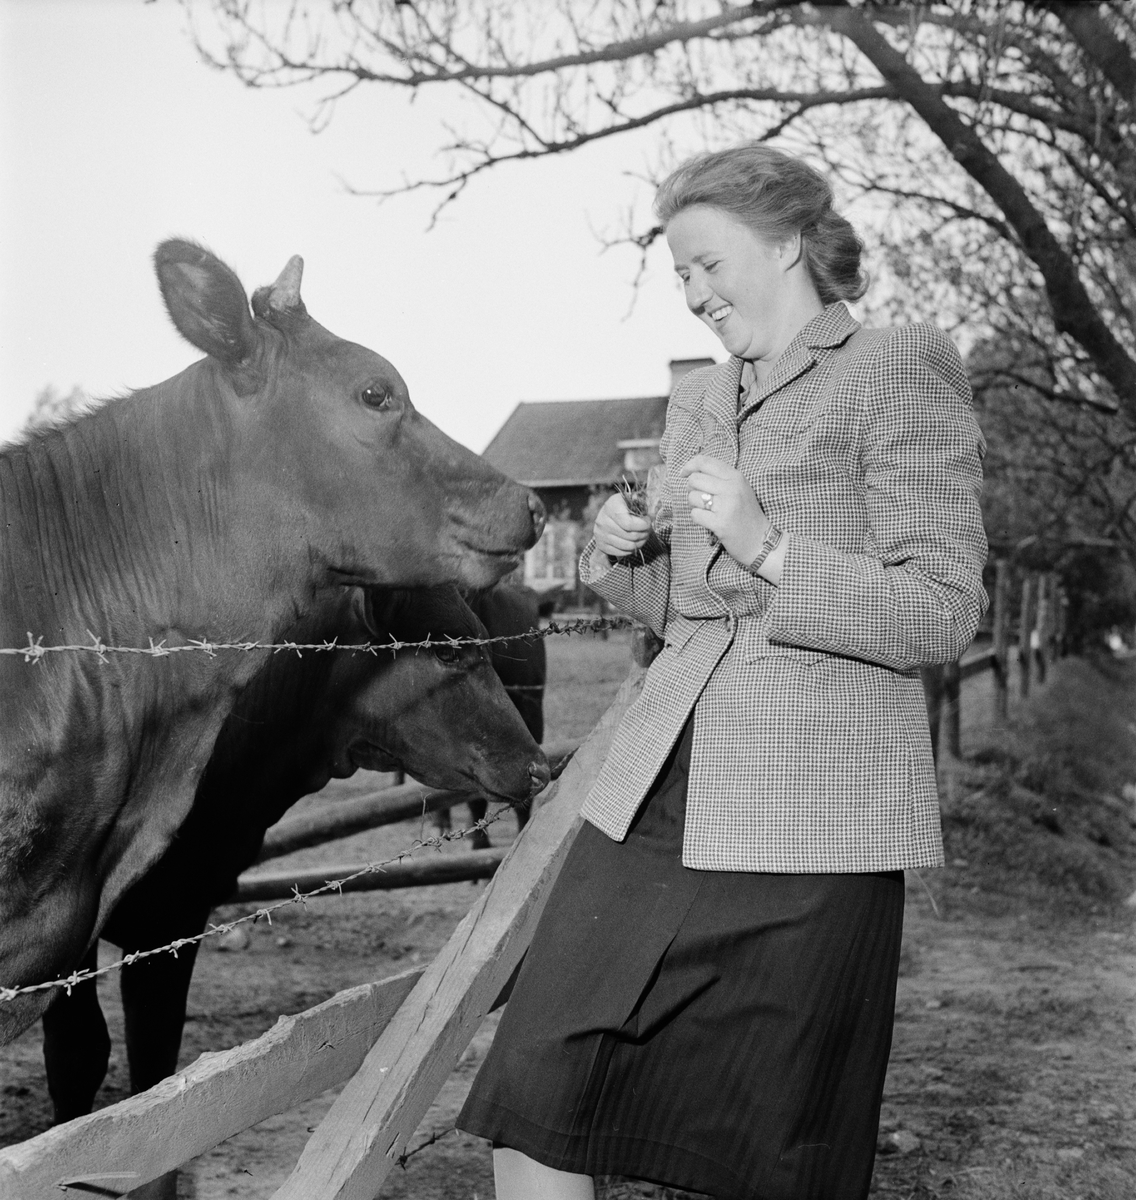 Kvinna vid kohage, Ultuna, Uppsala 1948